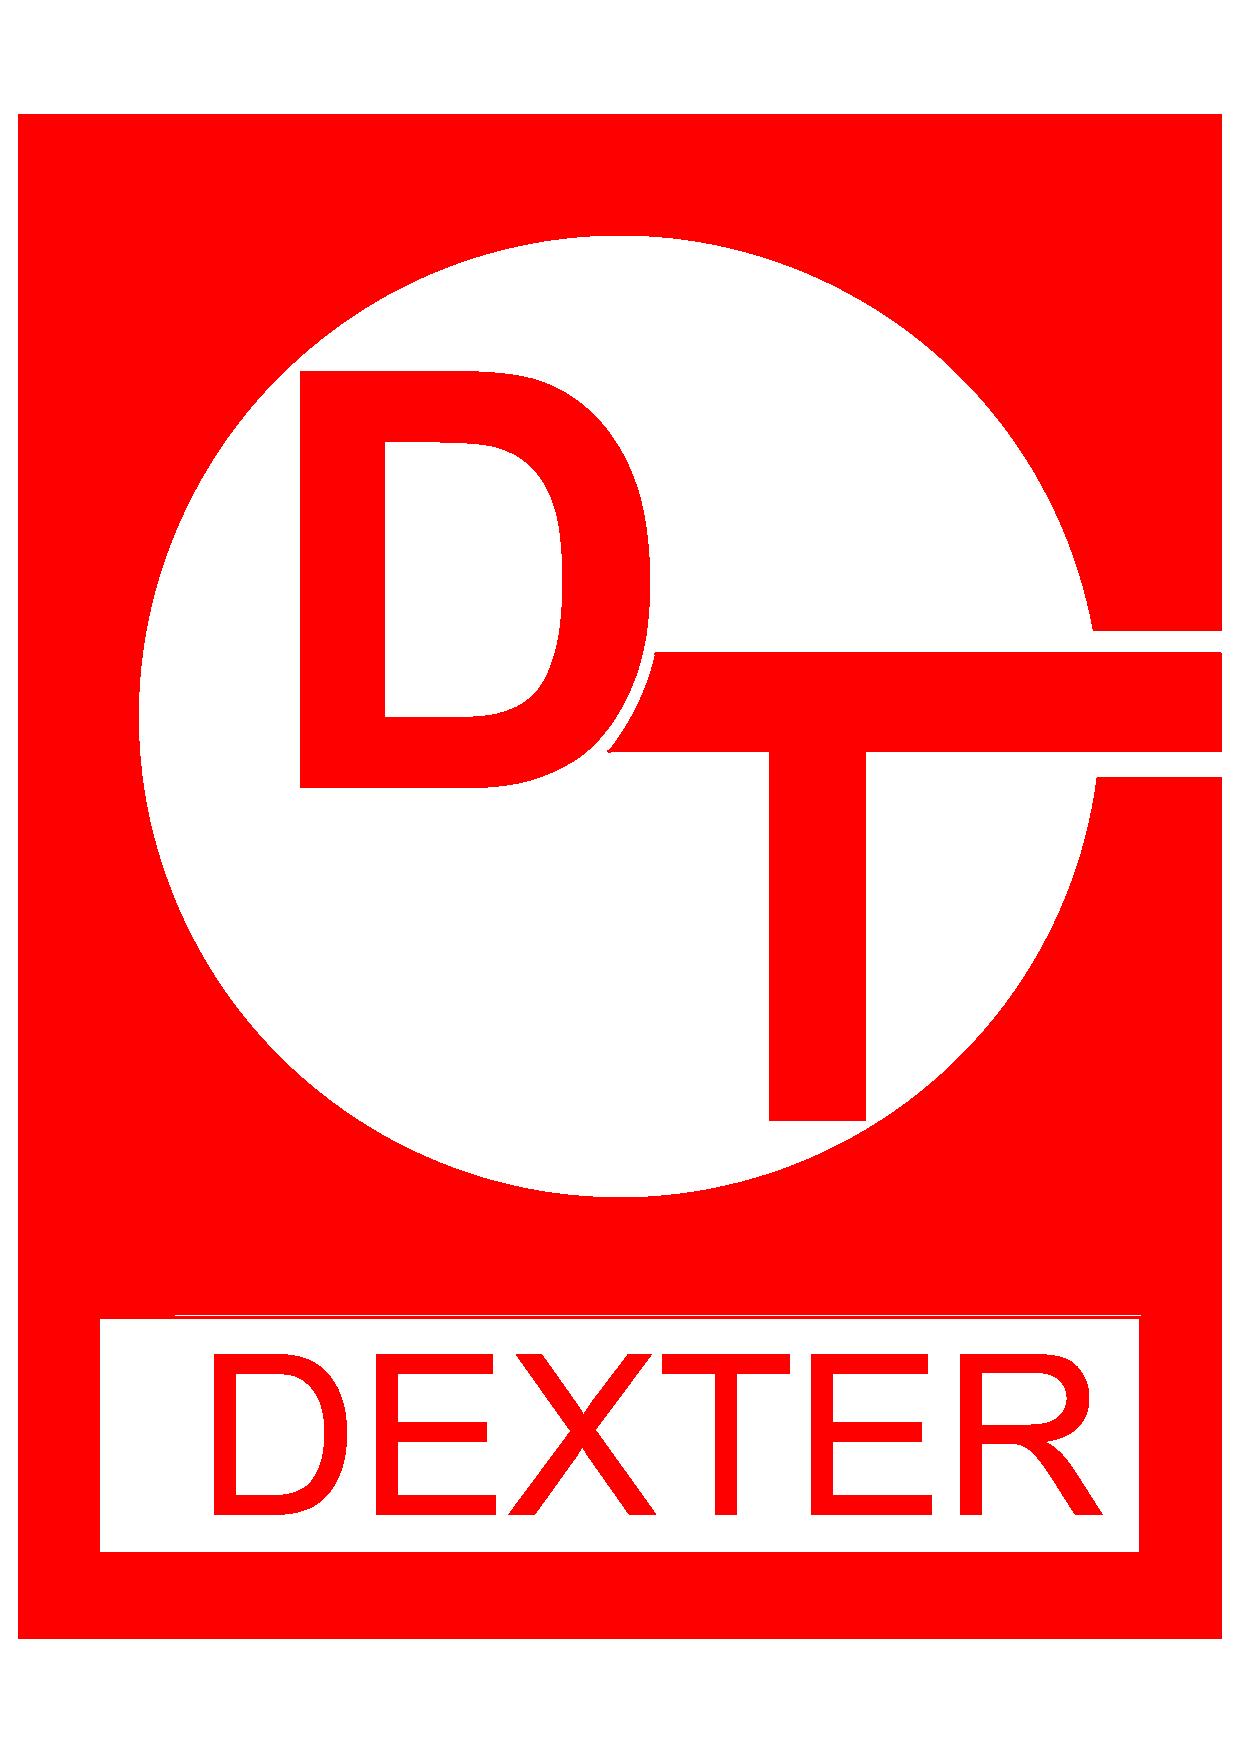 บริษัท  เด็คส์เตอร์ อินดัสทรี  จำกัด logo โลโก้